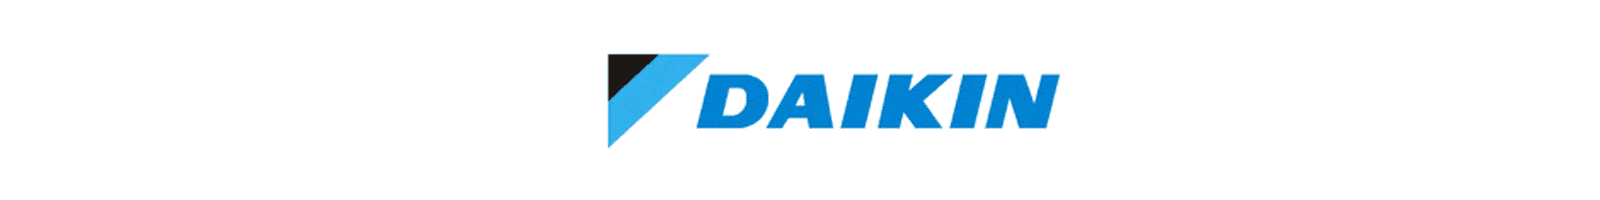 daikin-logo-grande